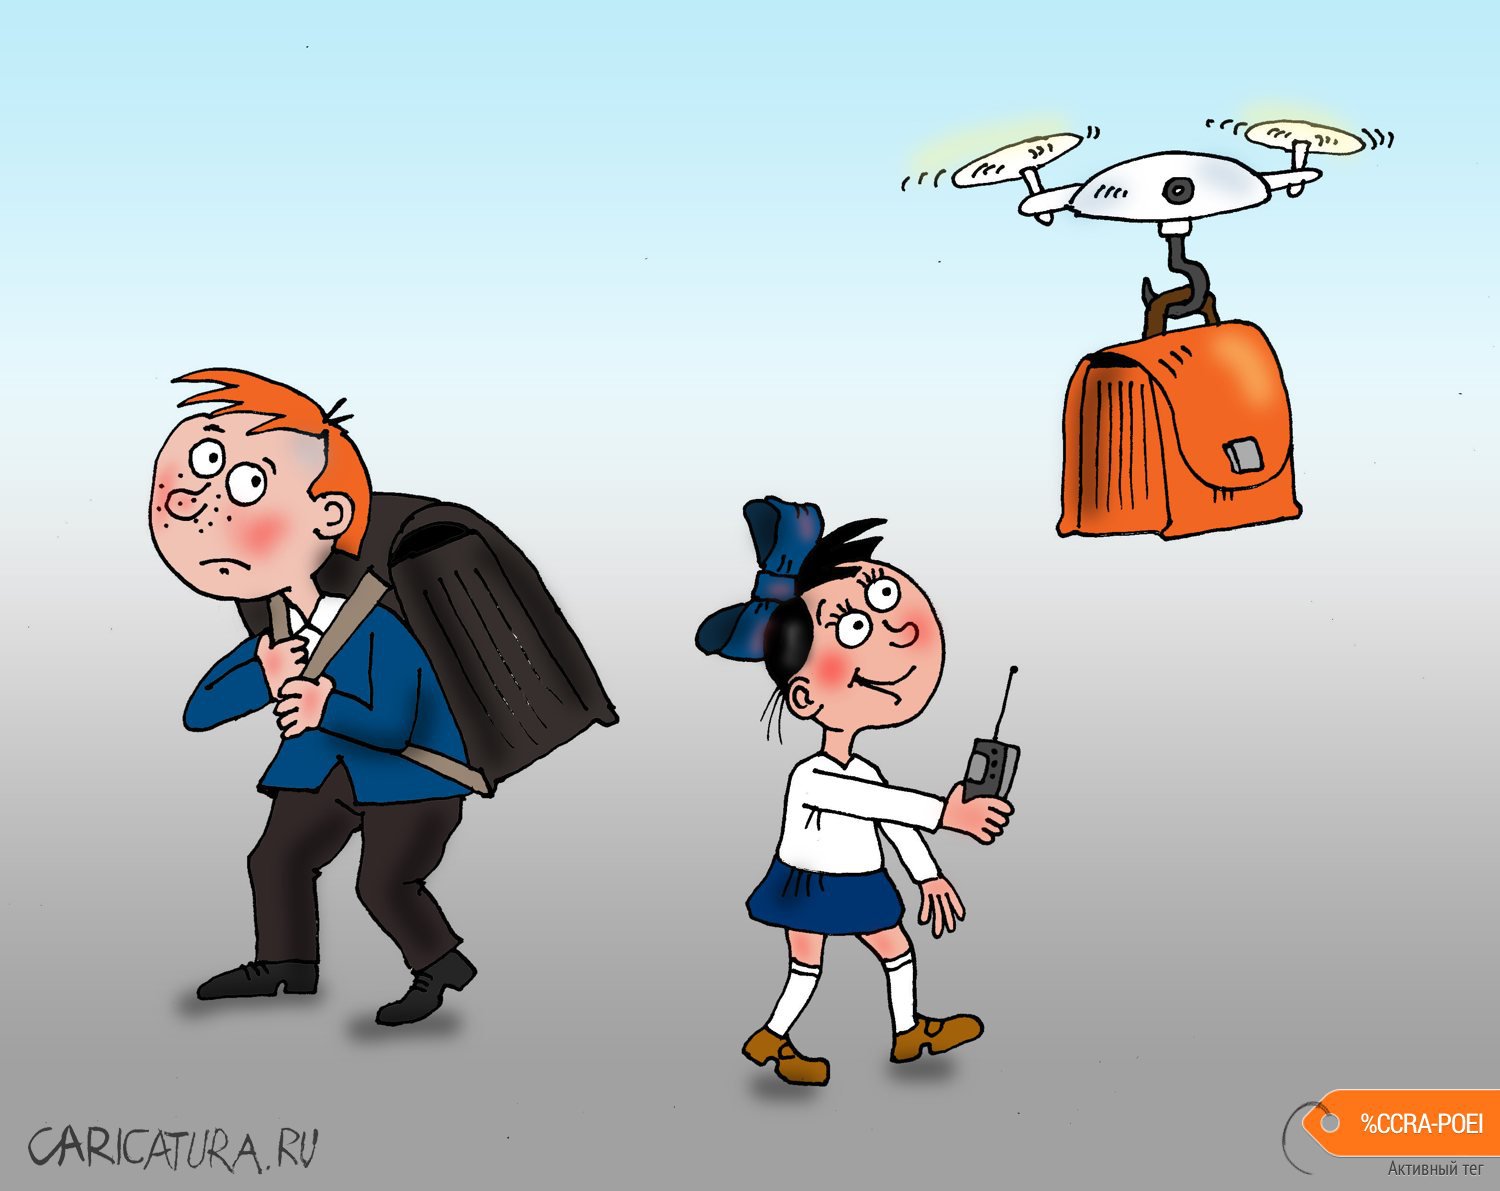 Карикатура "Дрон", Валерий Тарасенко